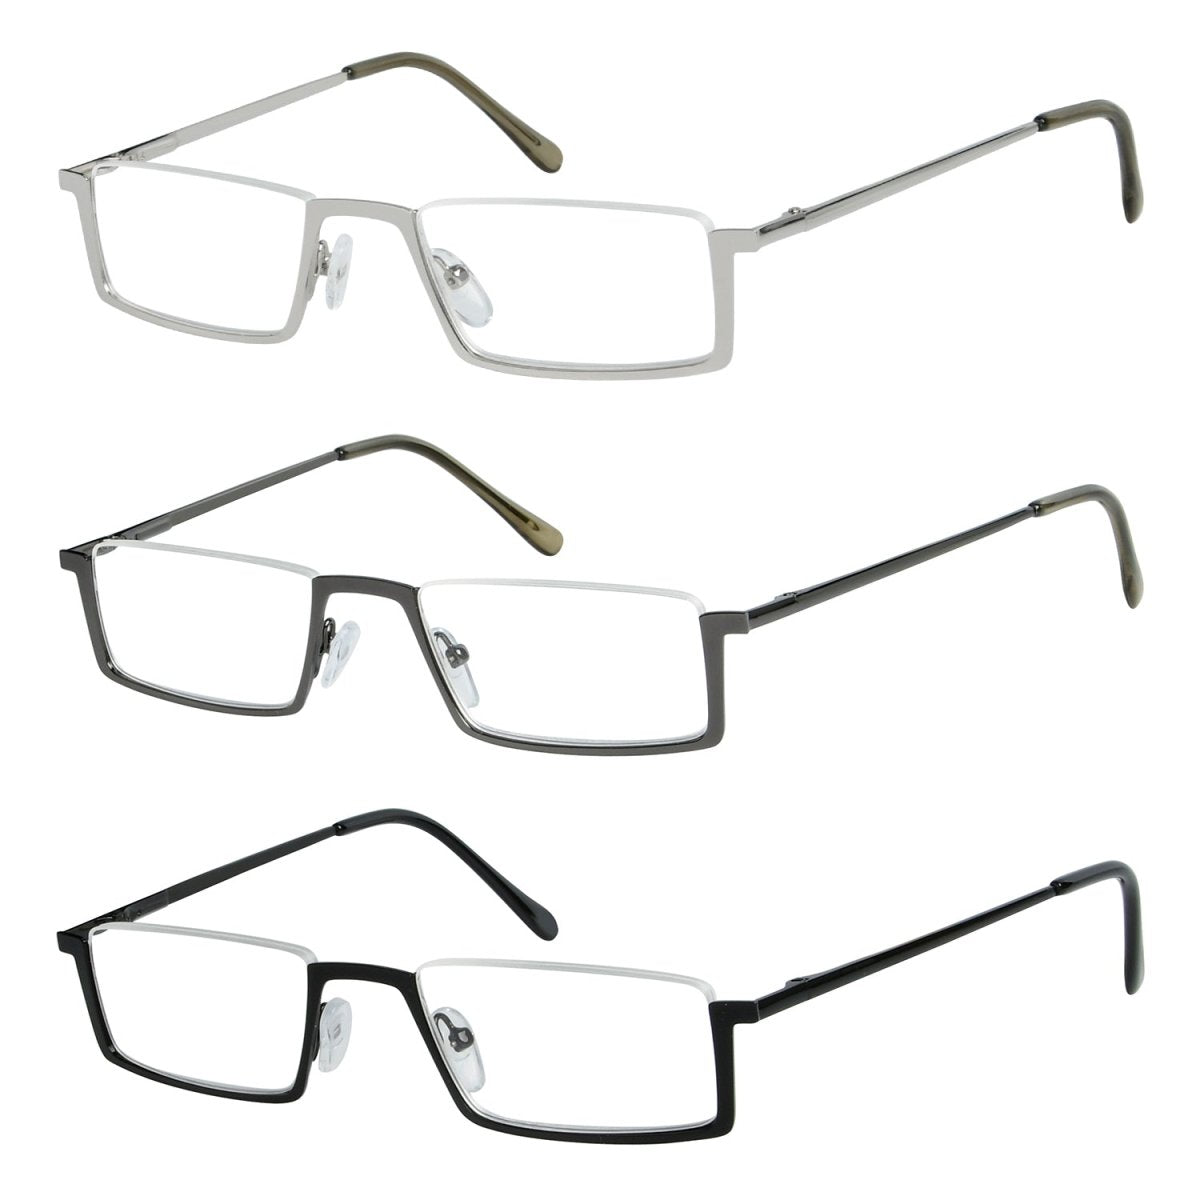 3 Pack Half Rim Metal Reading Glasses R1613eyekeeper.com